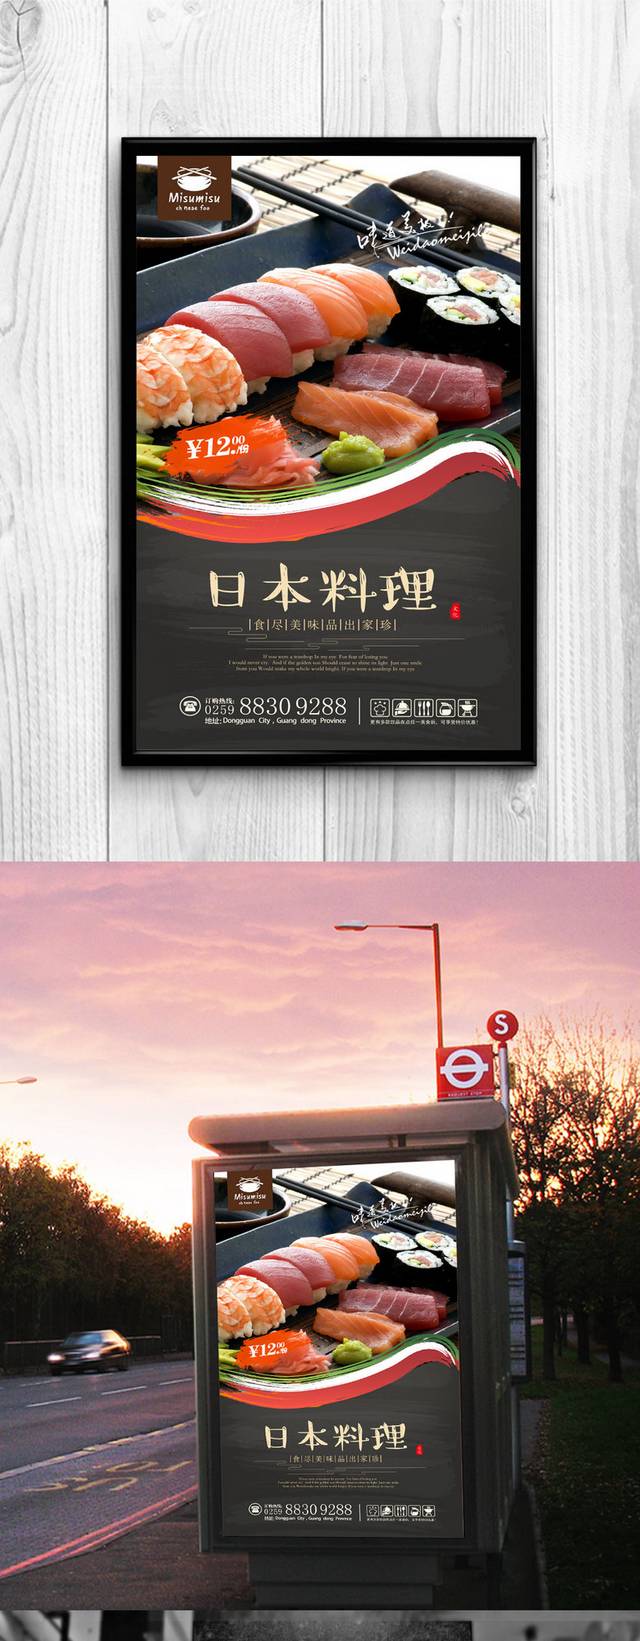 高档精美日本料理宣传海报设计